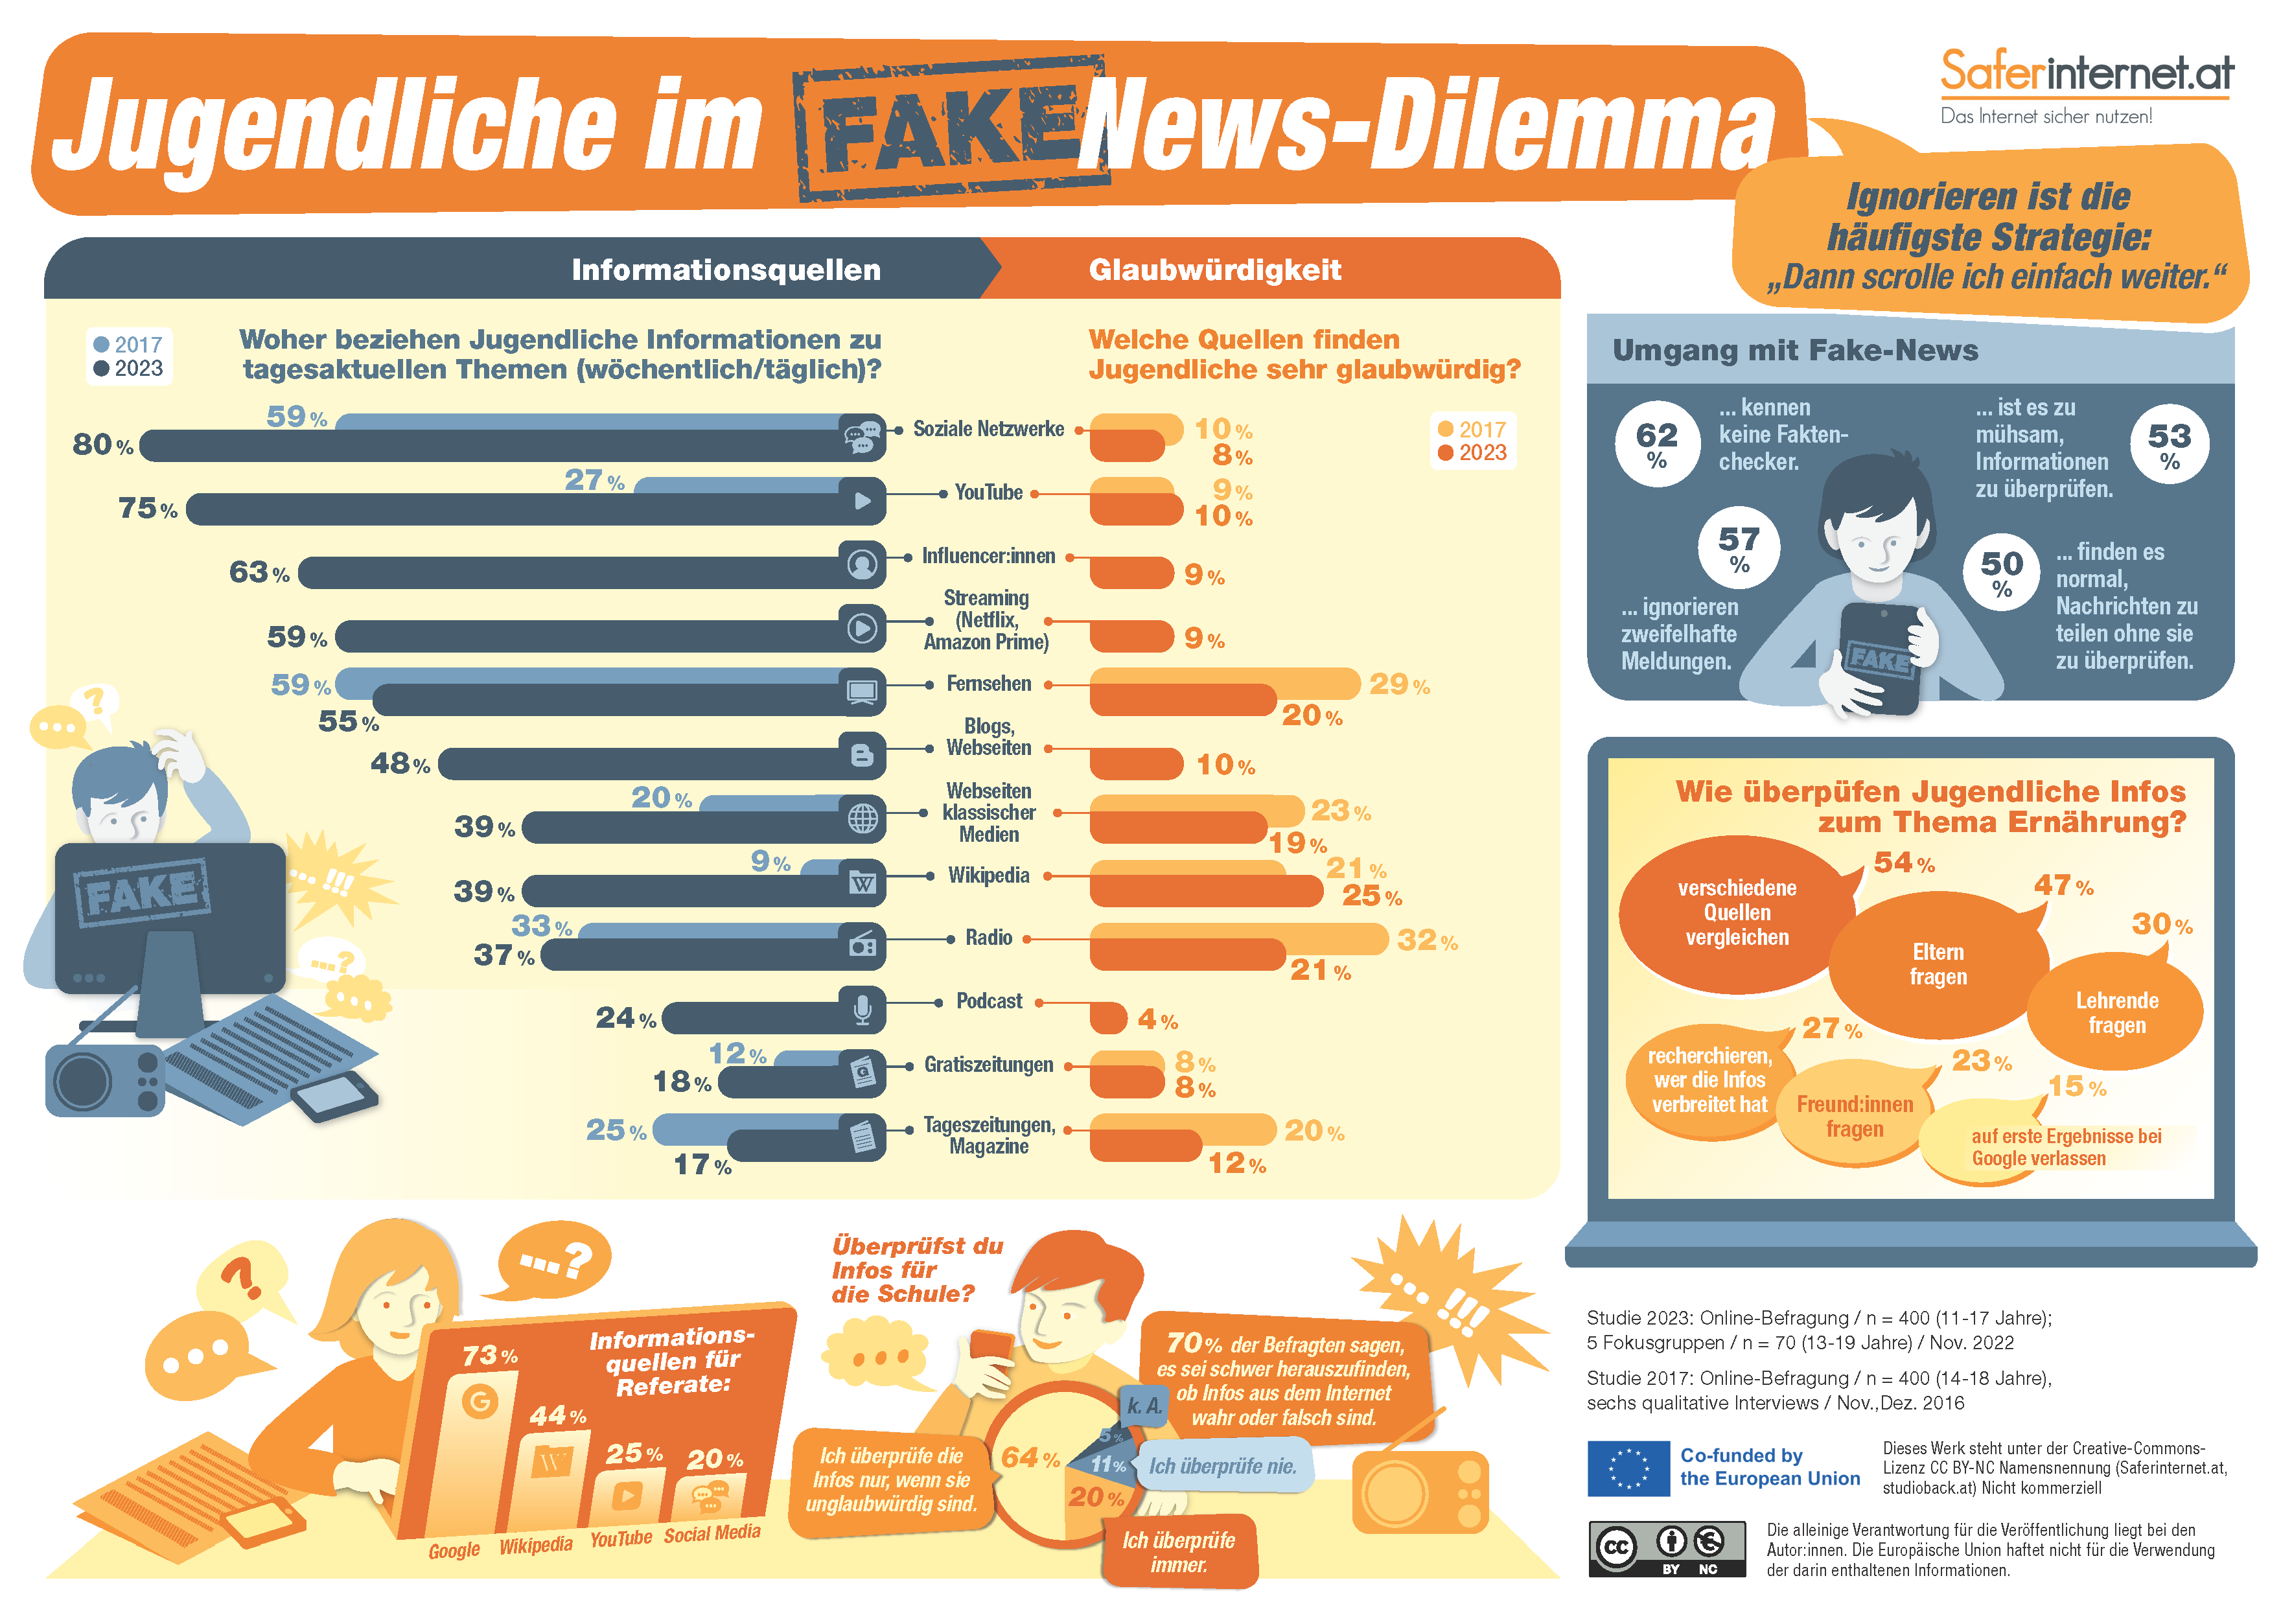 Grafik zu den Studienergebnissen von Saferinternet.at rund um das Thema Jugendliche im Fake News Dilemma. 